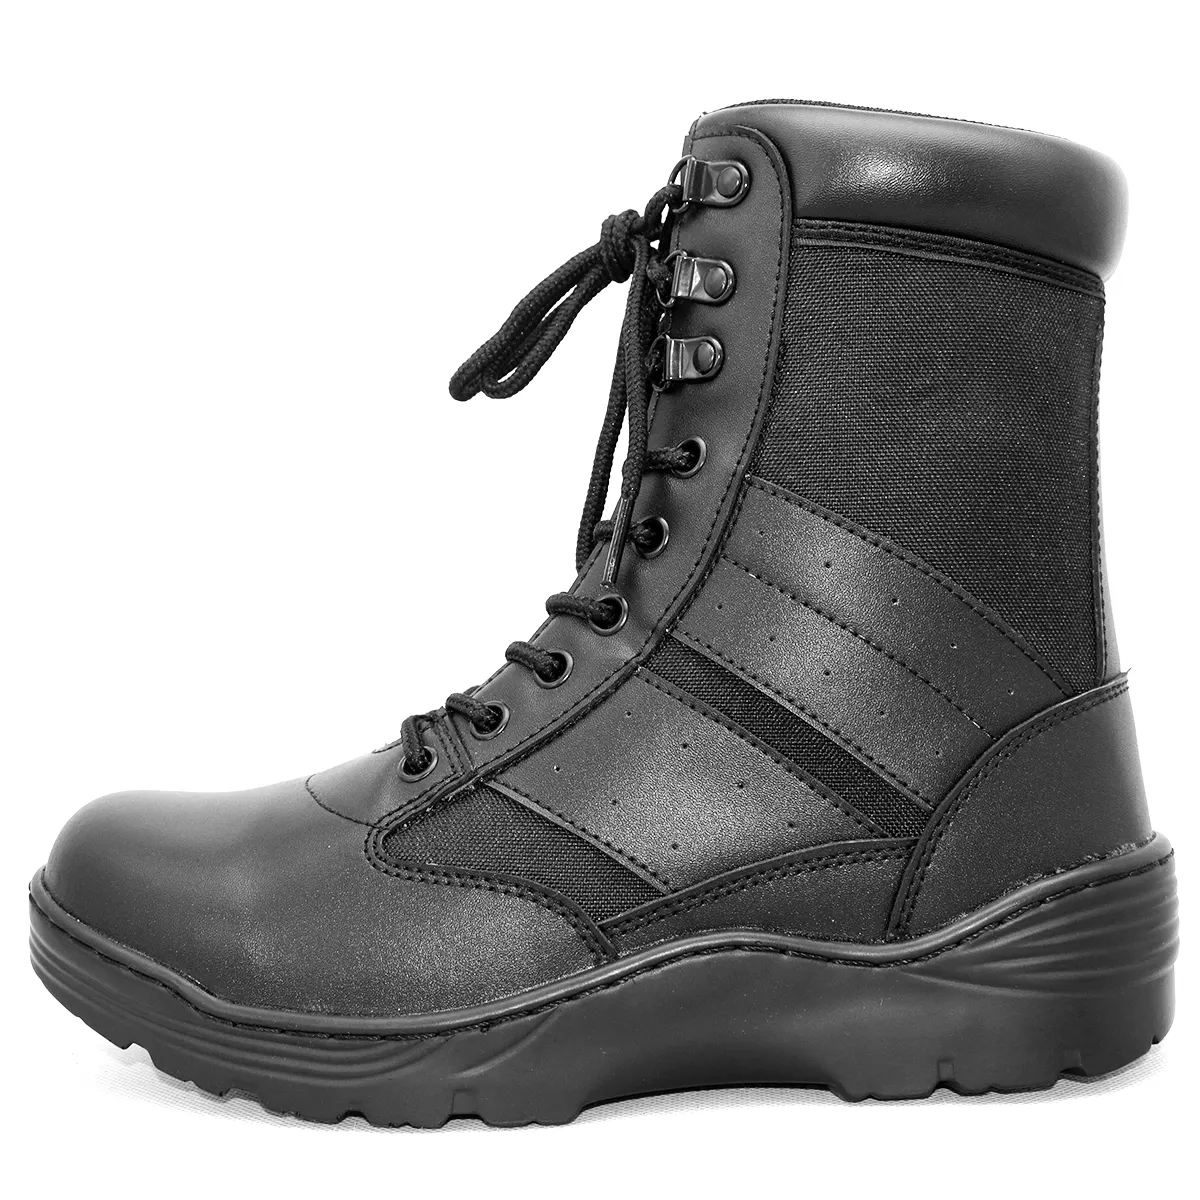 Botas de combate para homens, venda quente de sapatos de segurança inverno em relevo, indústria de couro, calçados de trabalho para combate